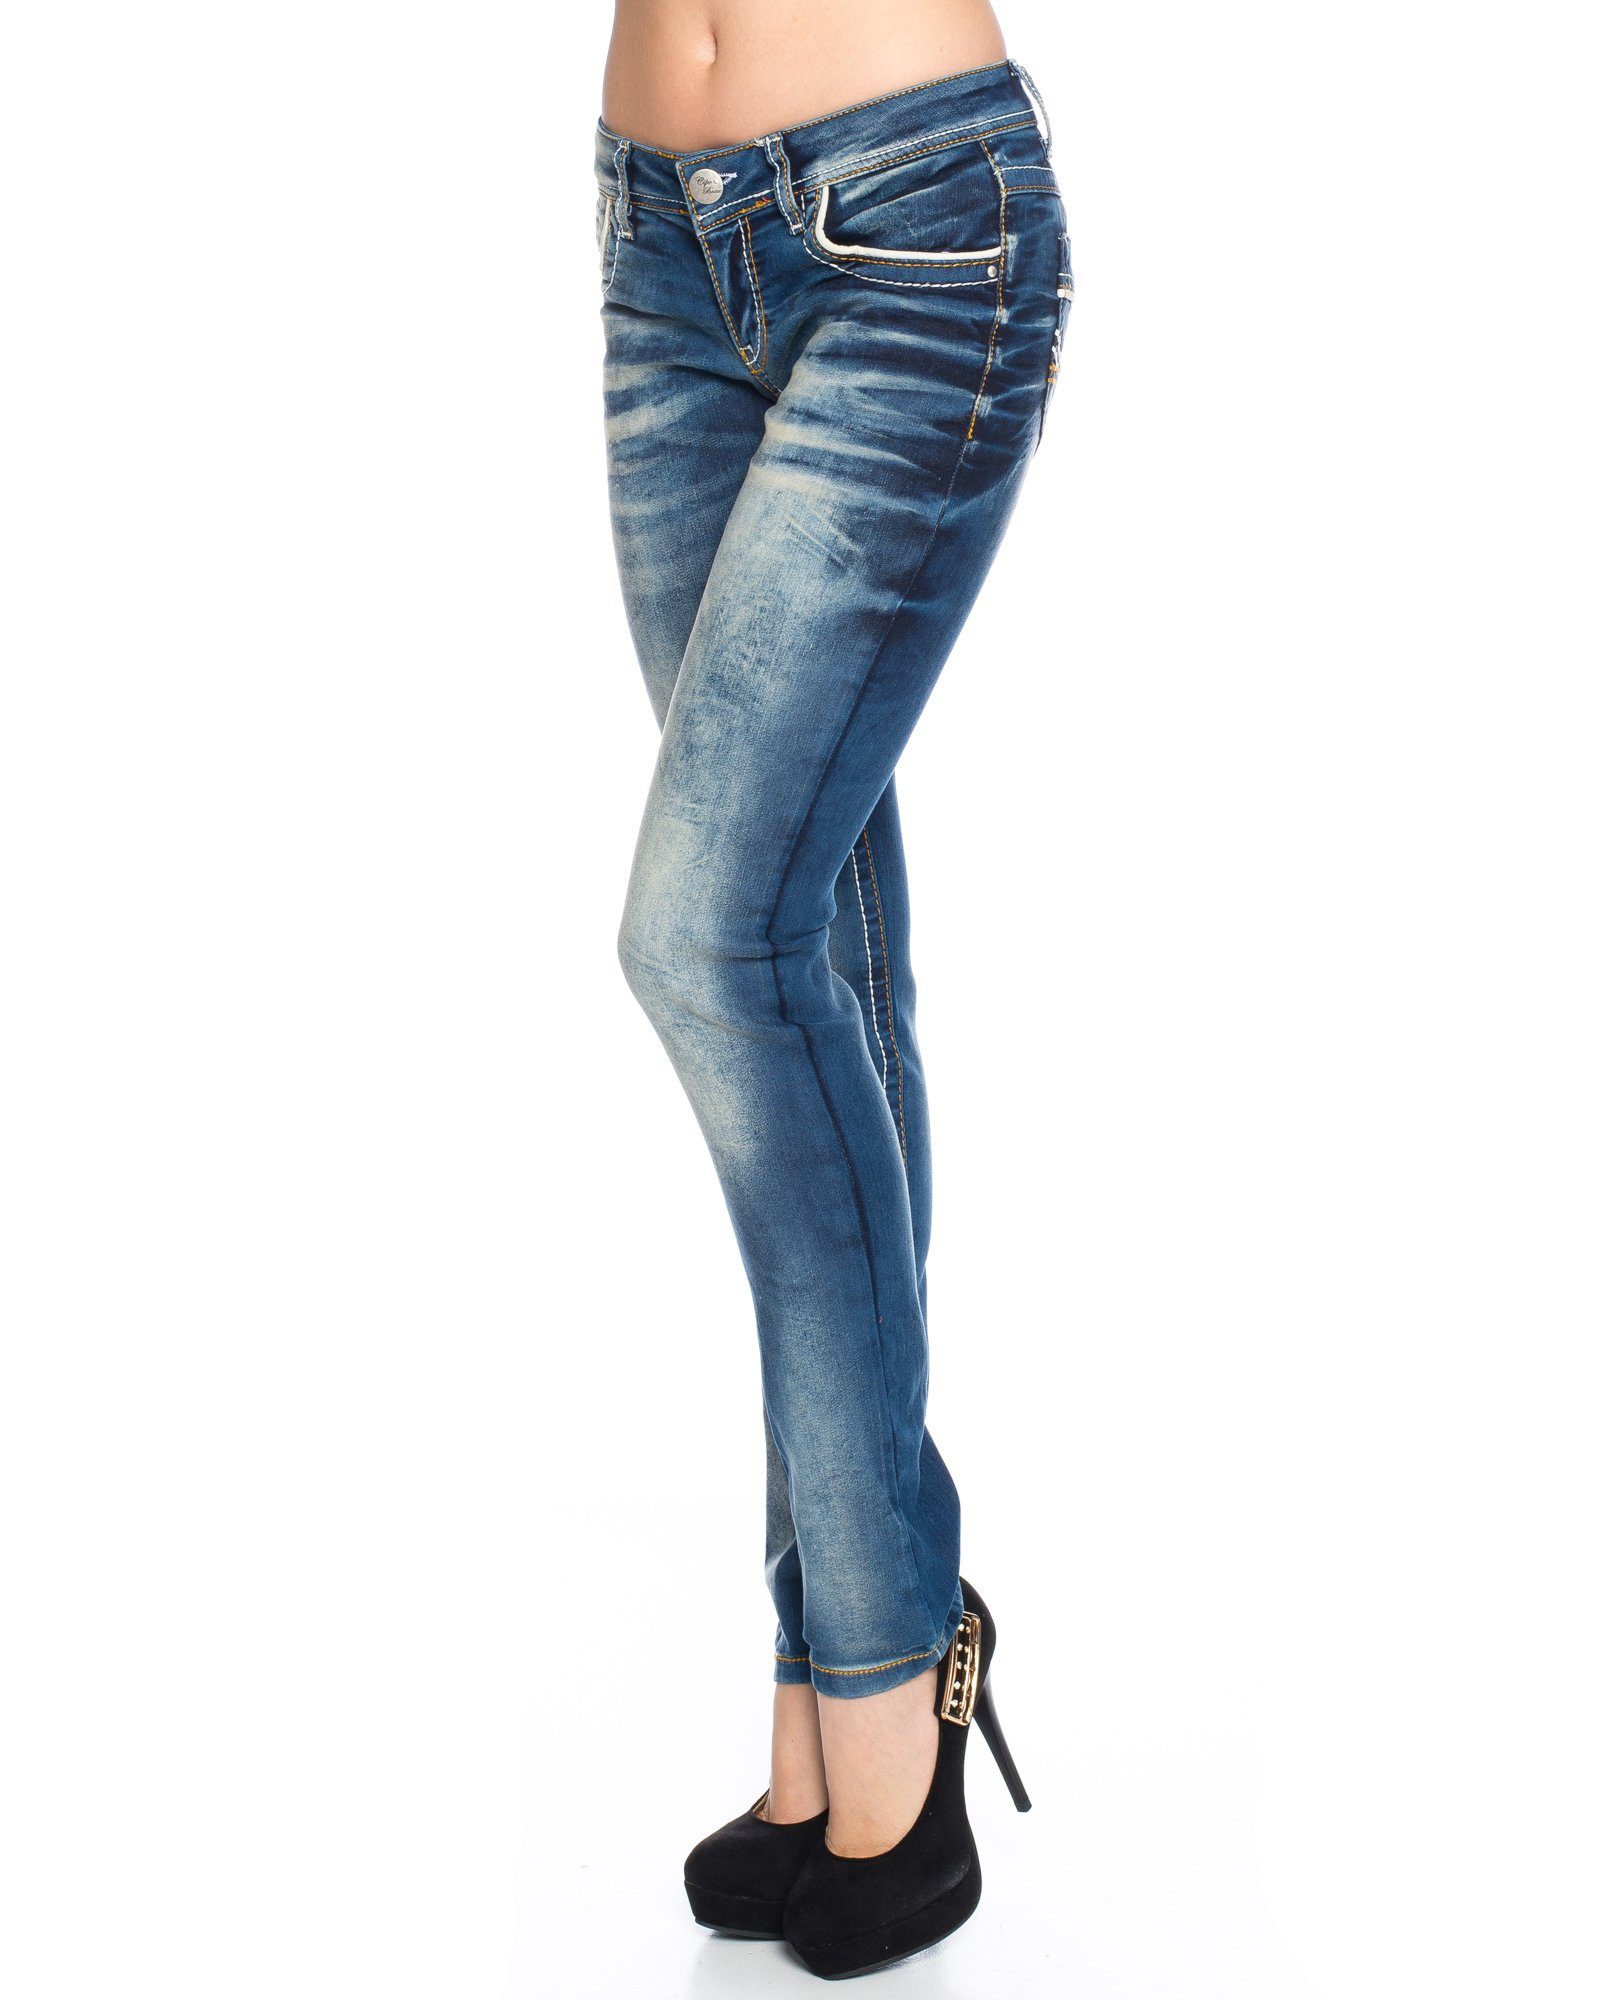 Damen Jeans Hose Gr 38 blau mit dicken Nähten Ziernähten 98% Baumwolle 